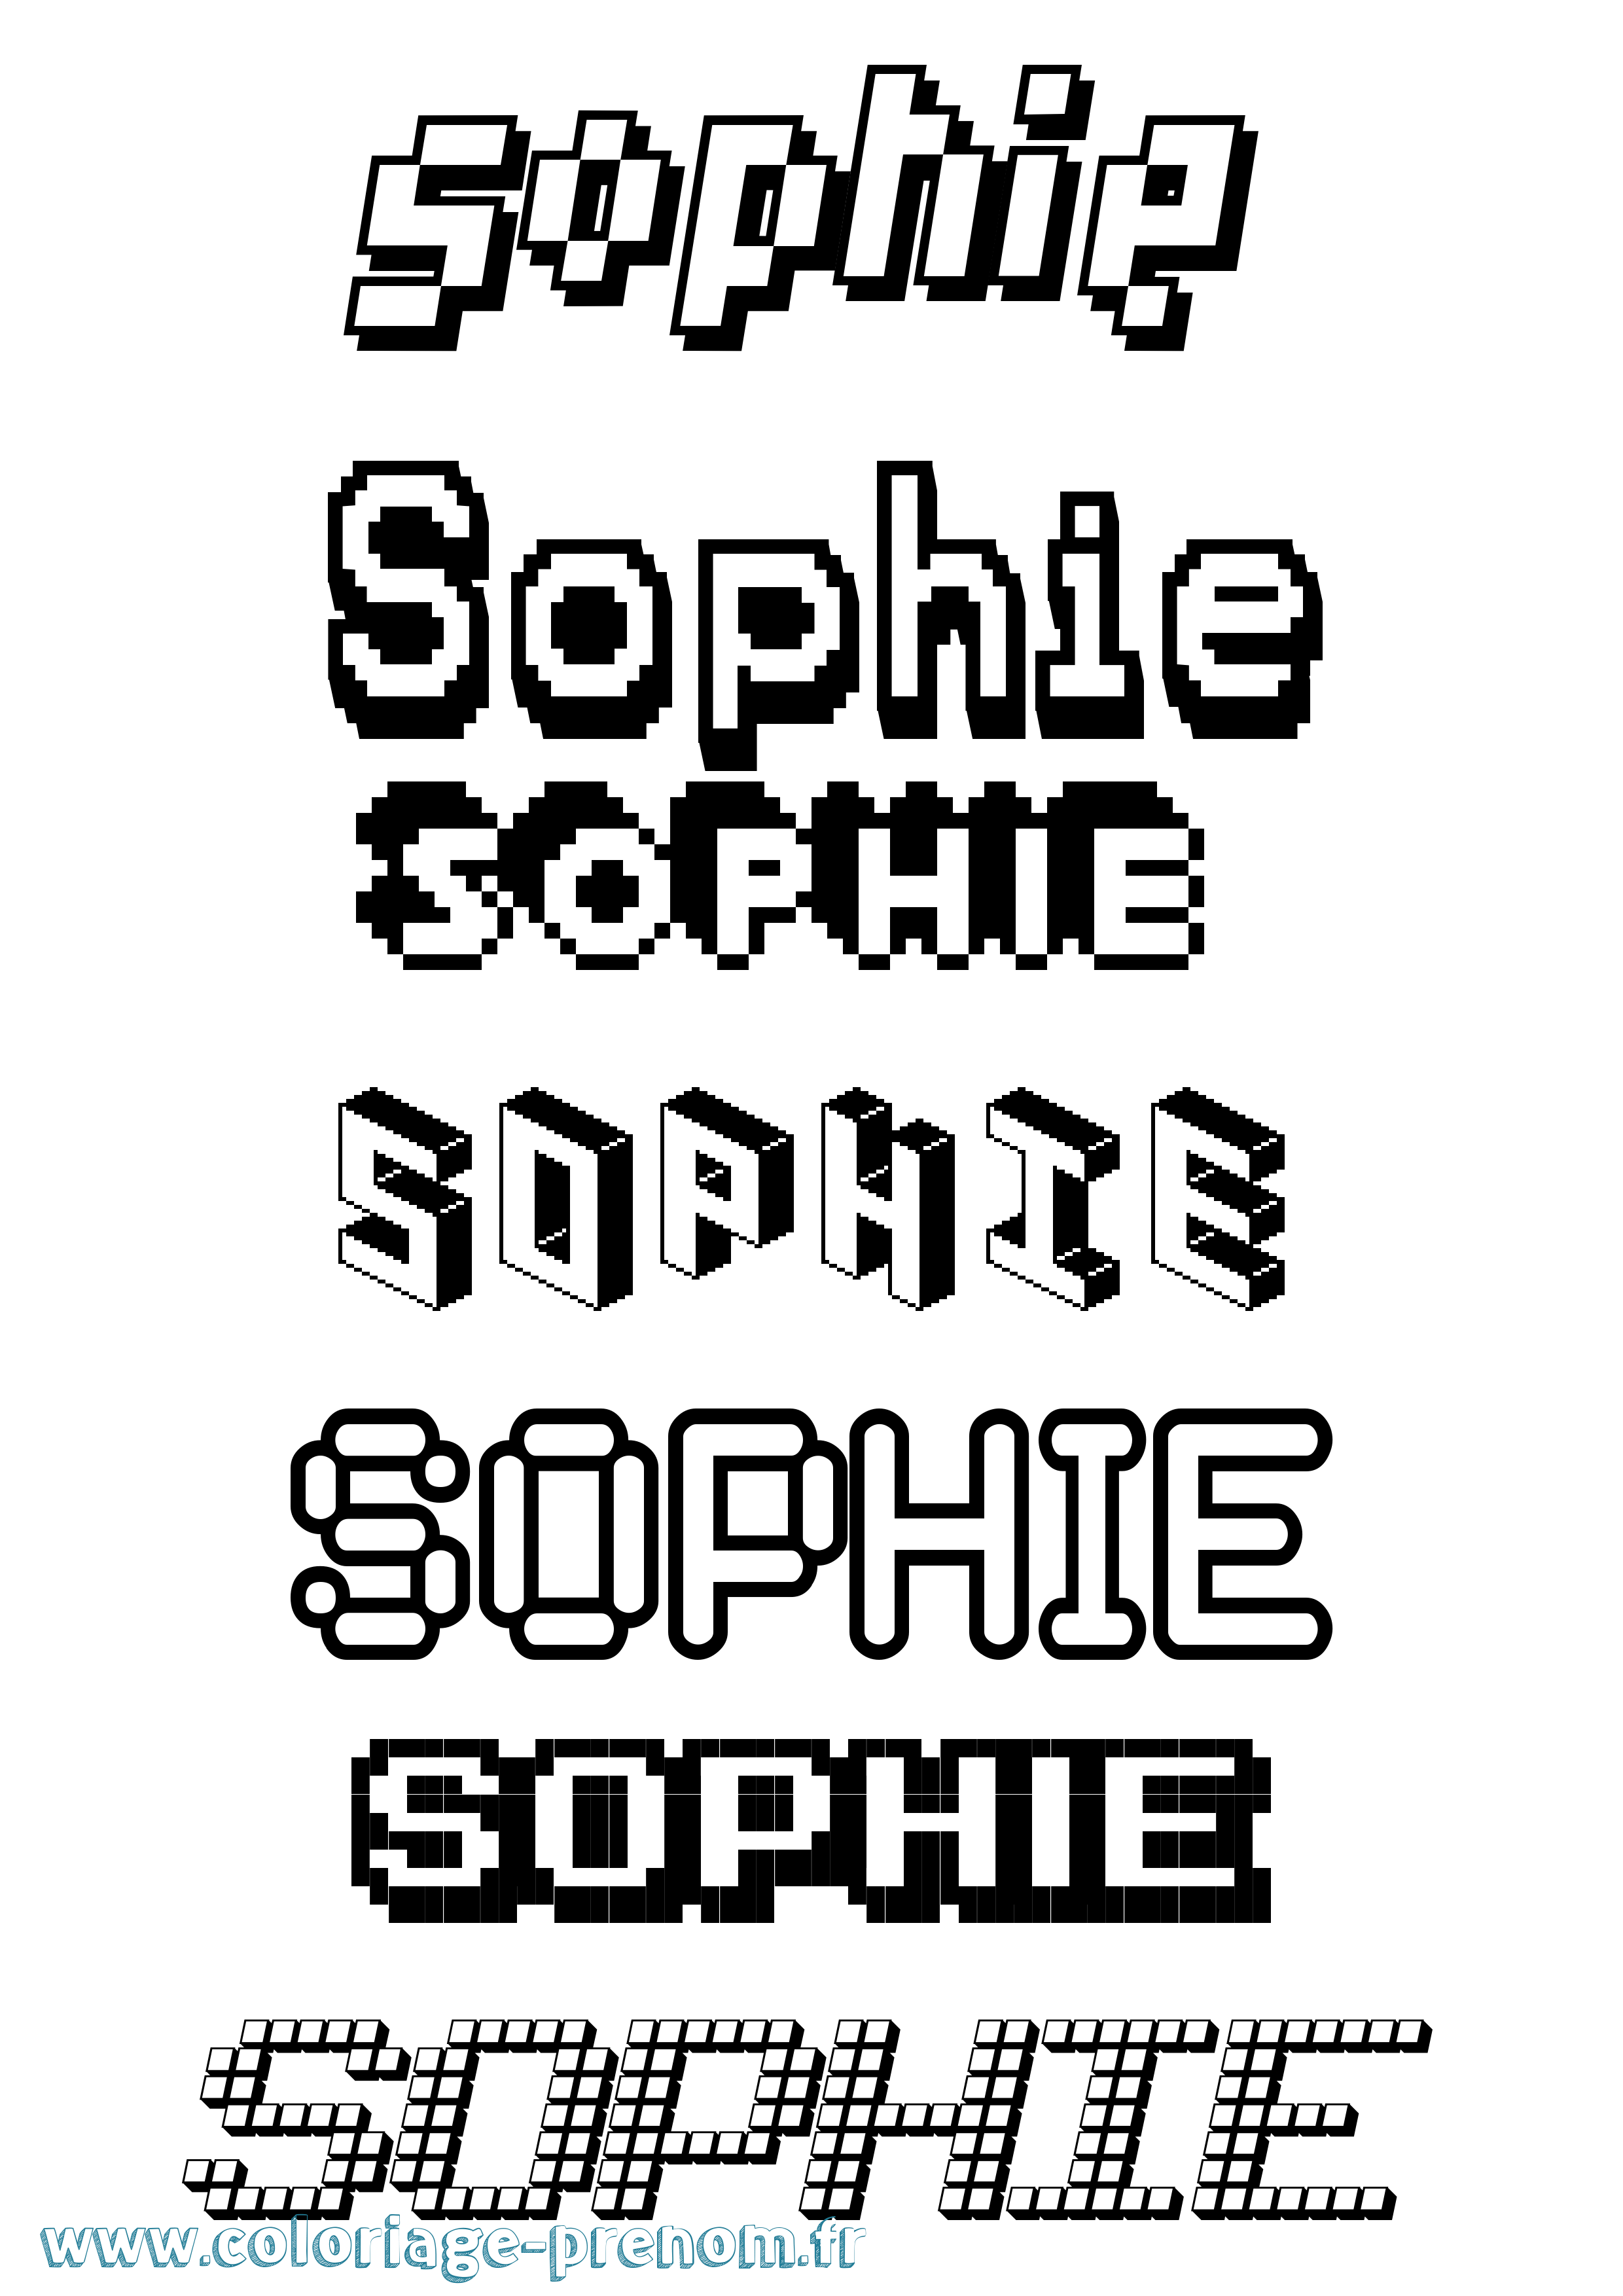 Coloriage prénom Sophie Pixel